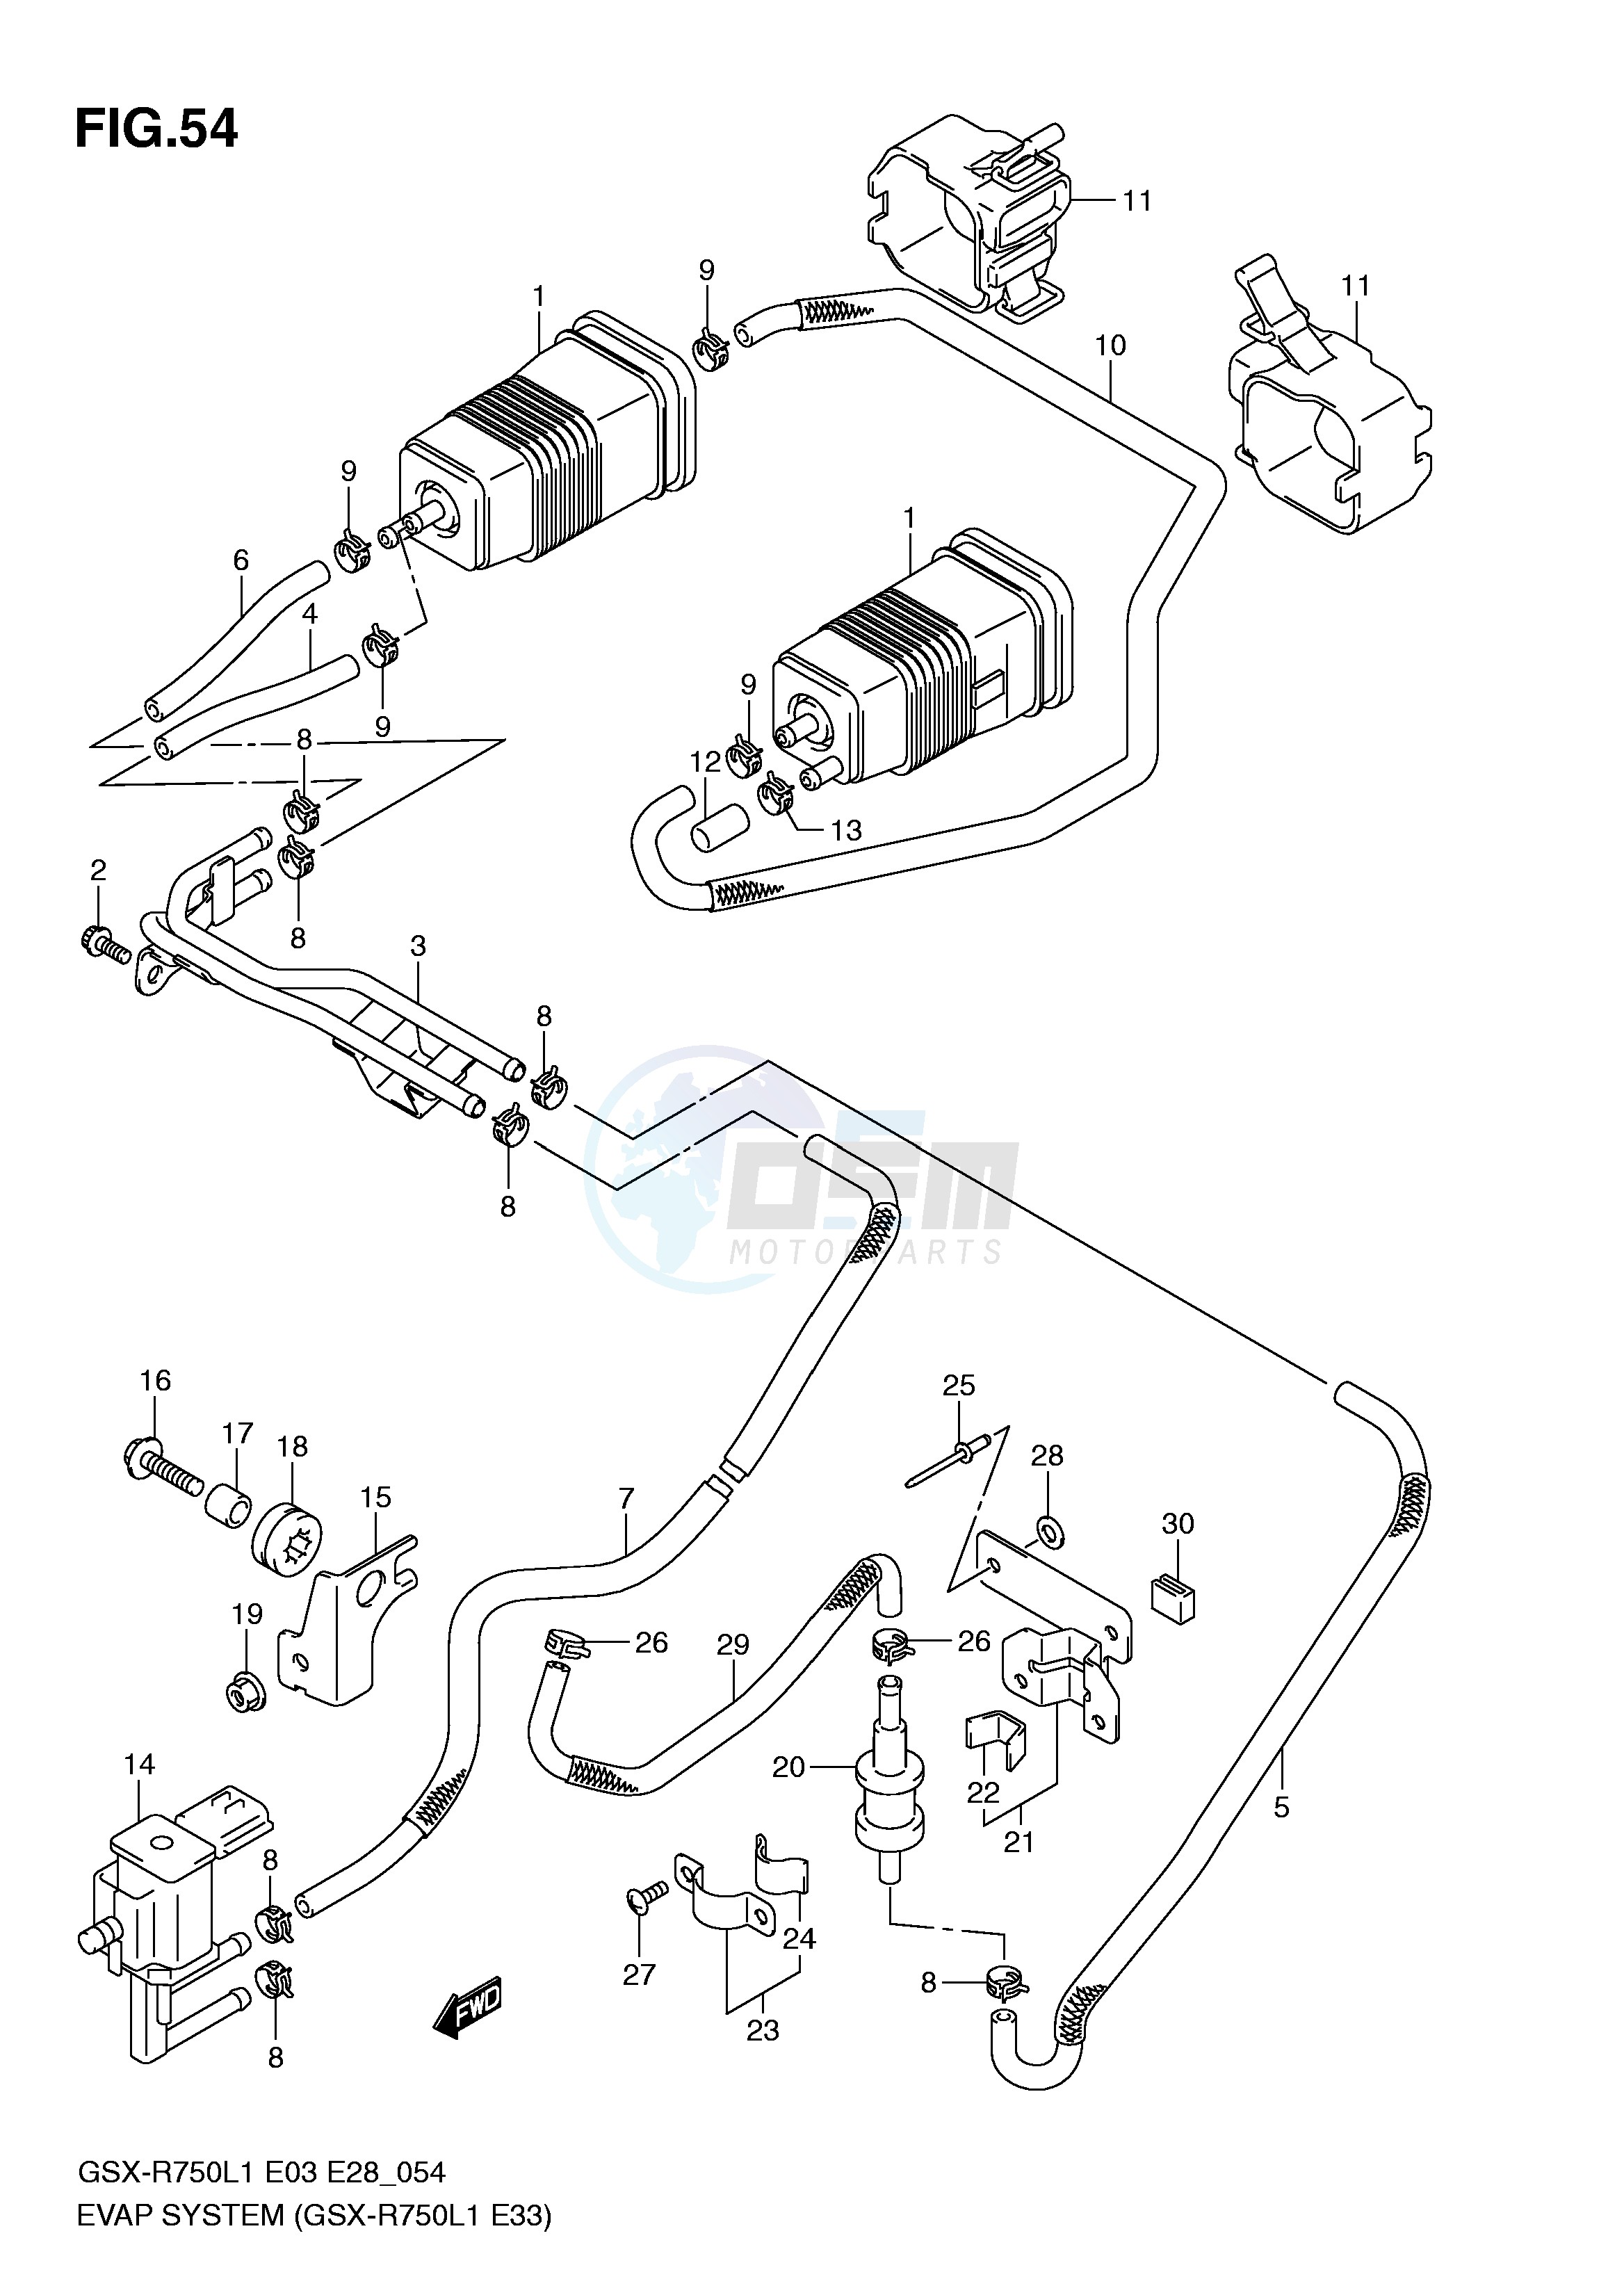 EVAP SYSTEM (GSX-R750L1 E33) blueprint